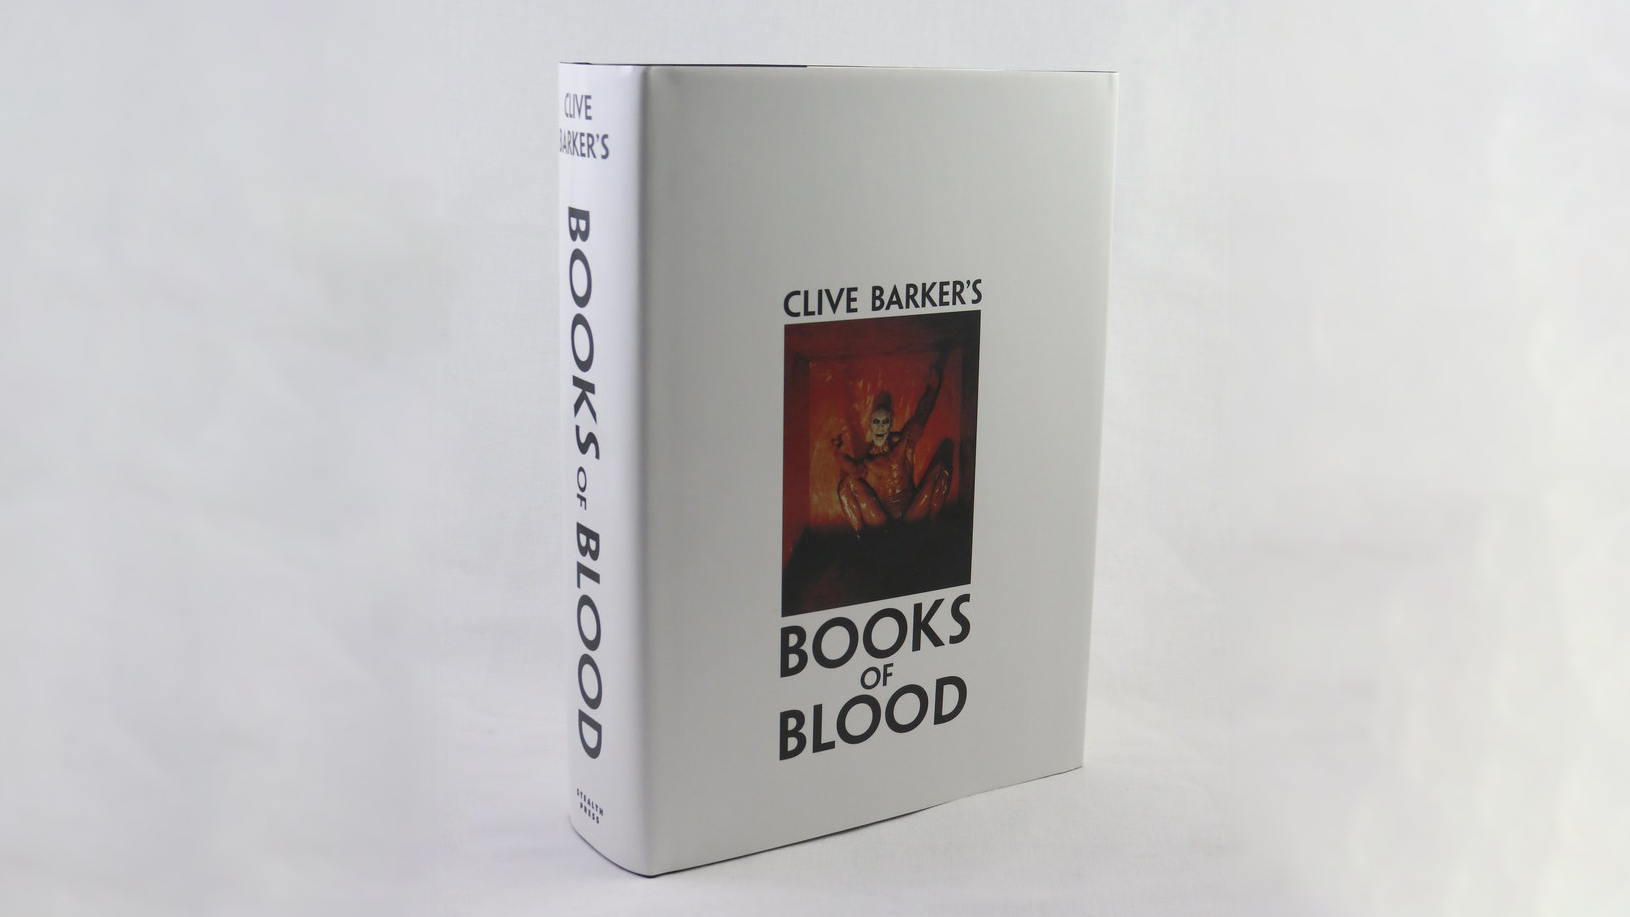 Англоязычное издание «Книг крови» Клайва Баркера